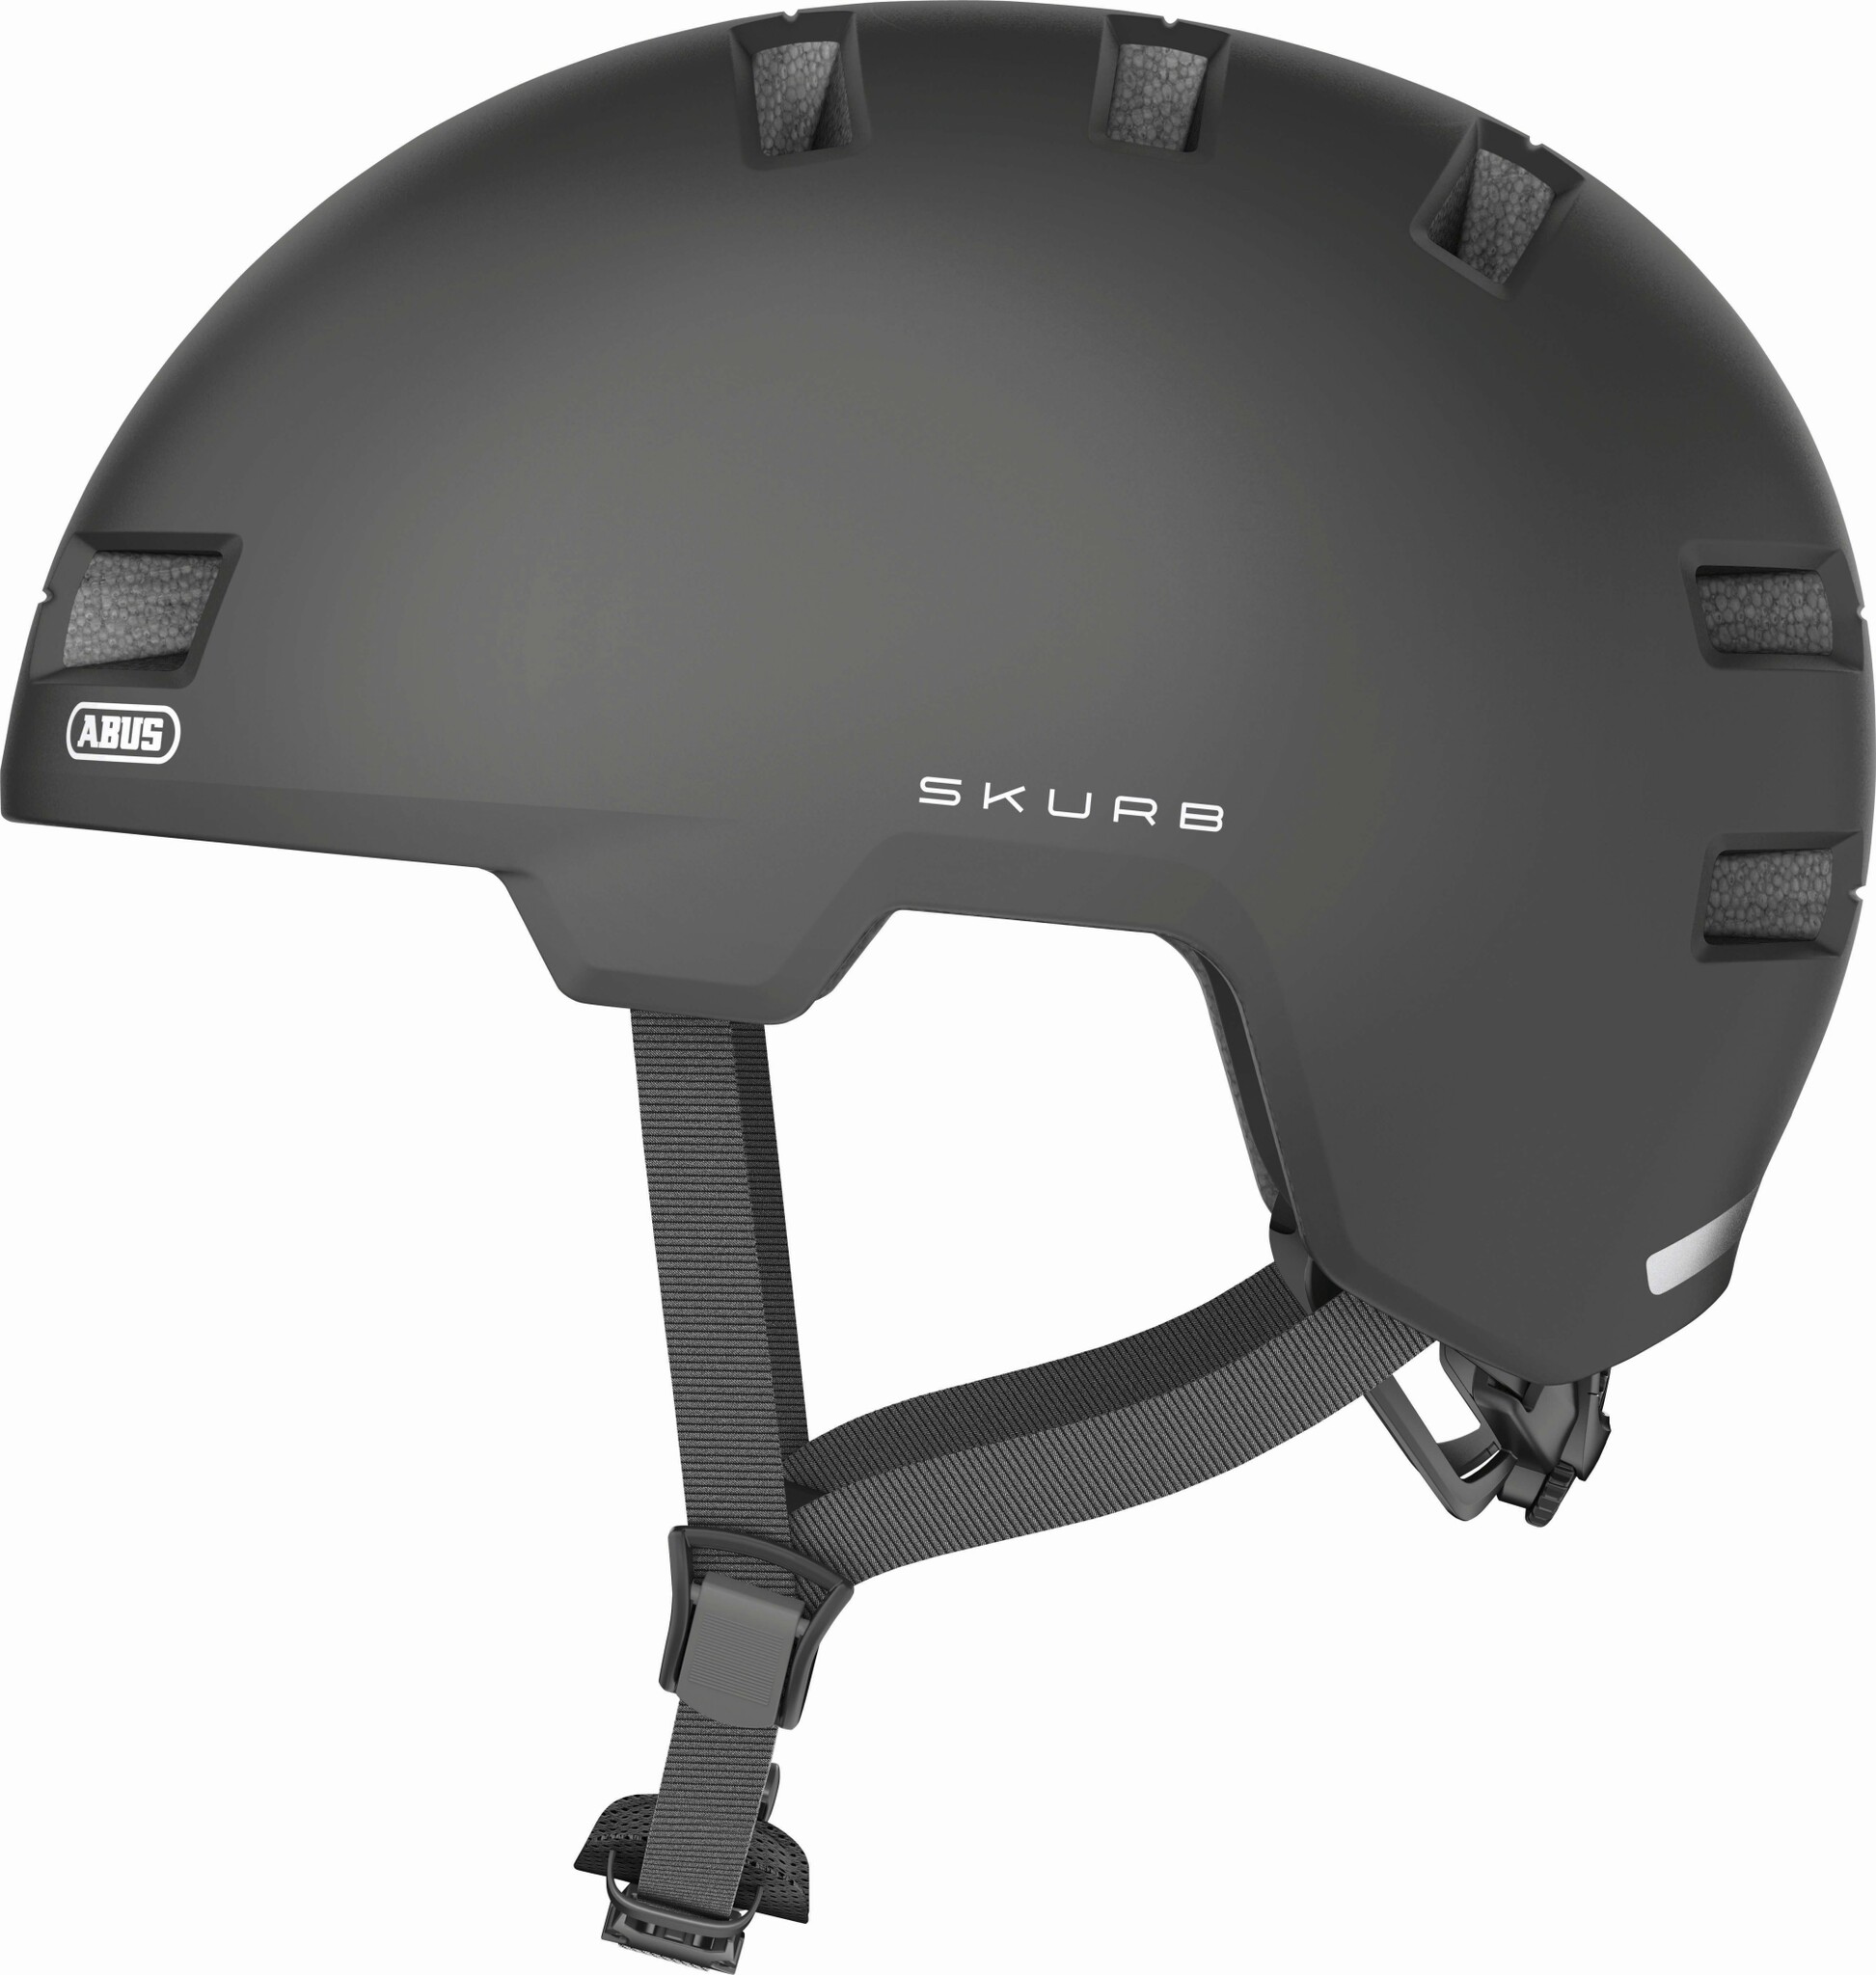 Шлем ABUS SKURB, размер M, Titan, серый фото 